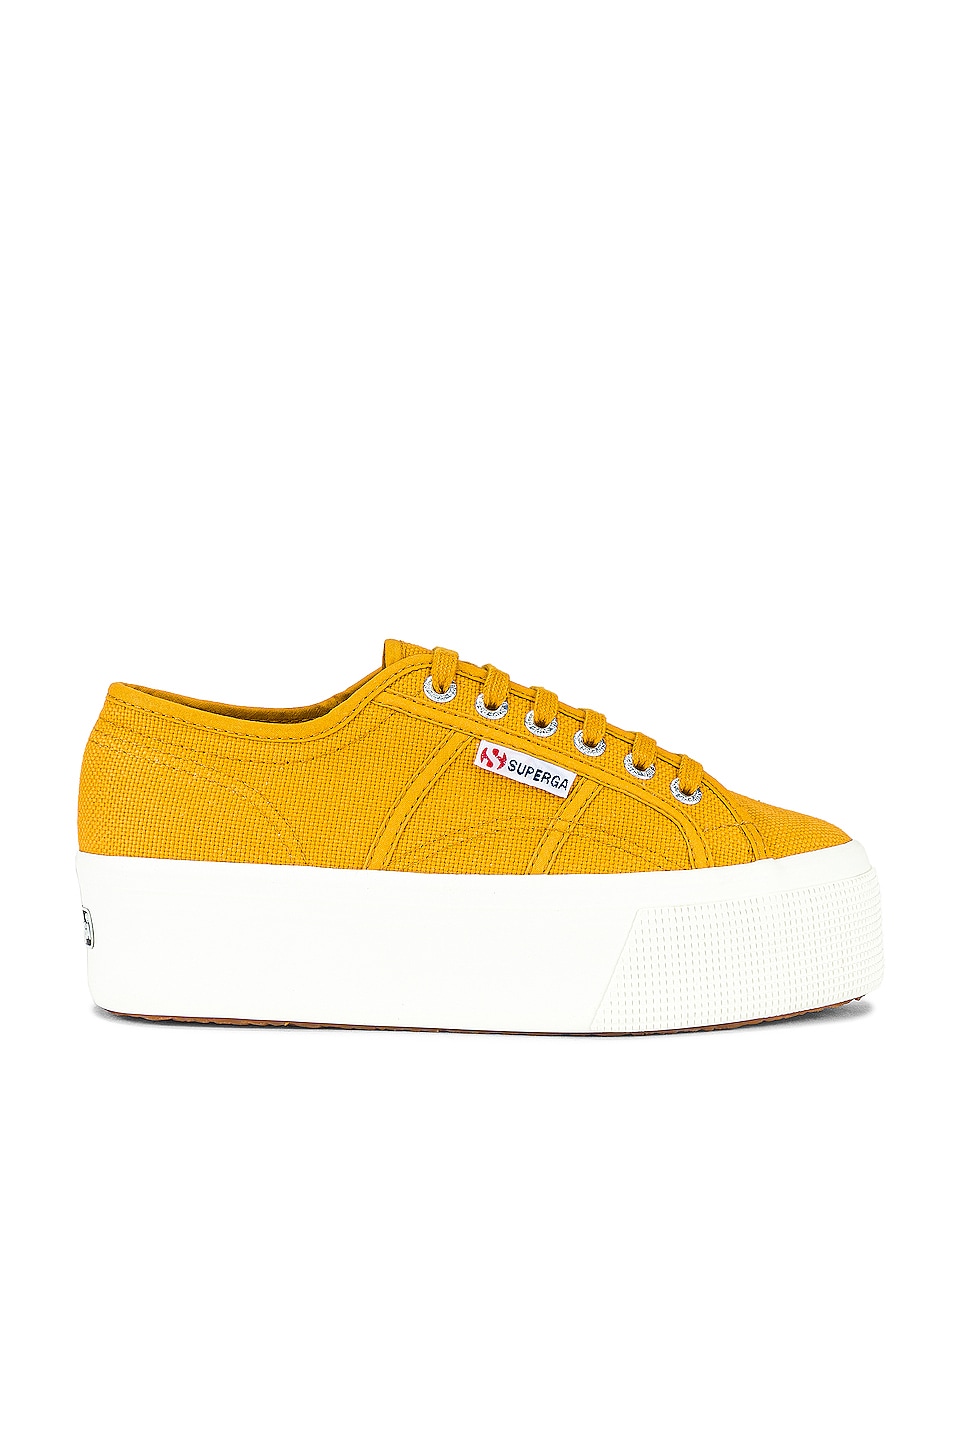 Superga 2790 Acotw Sneaker Yellow Golden